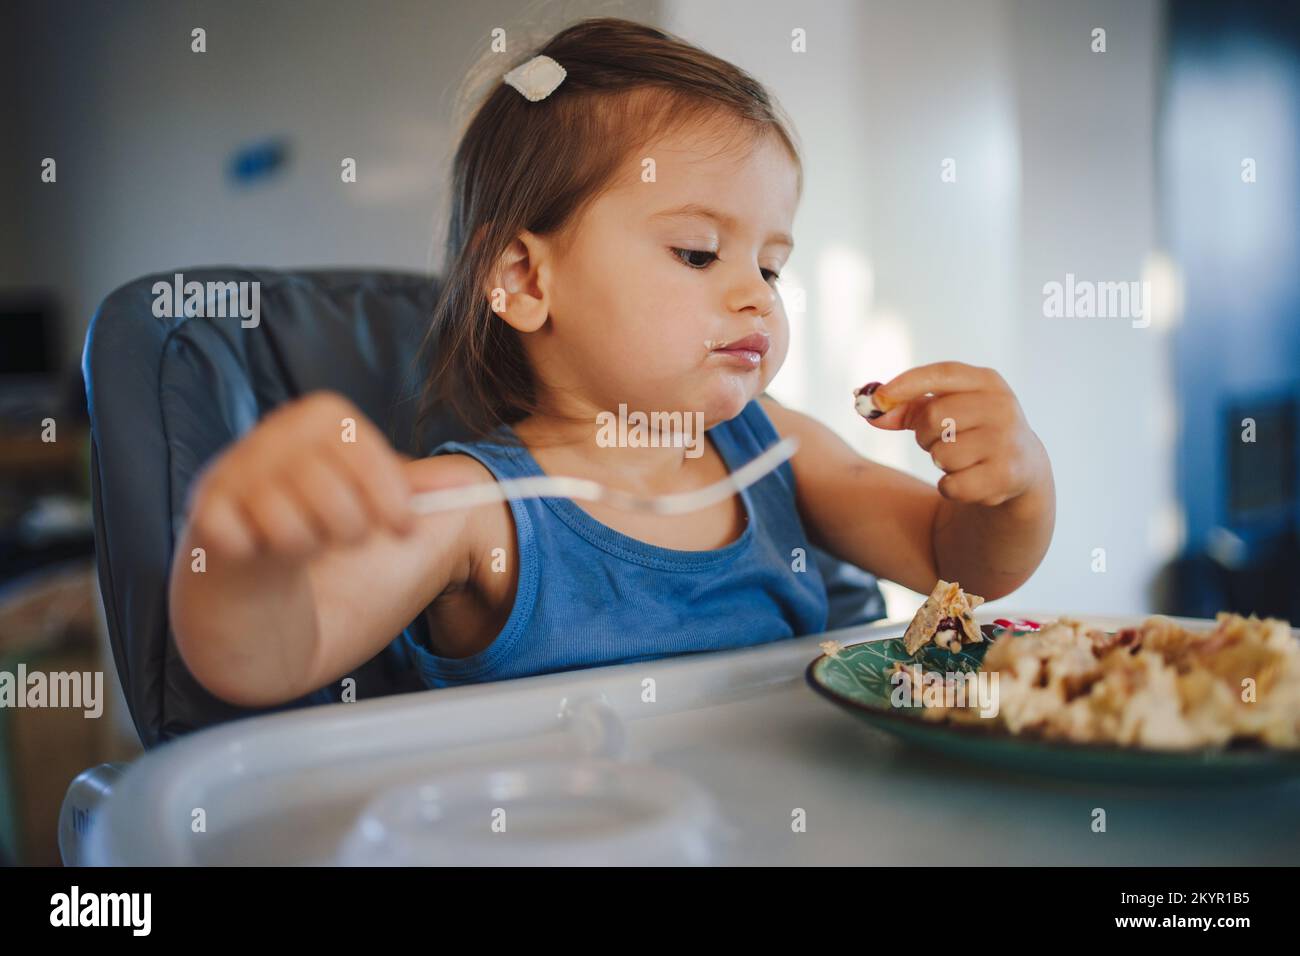 Bonne petite fille de bébé apprendre à manger avec une fourchette tout en étant assis dans une chaise d'enfant. Un enfant souriant mange avec ses mains. Banque D'Images